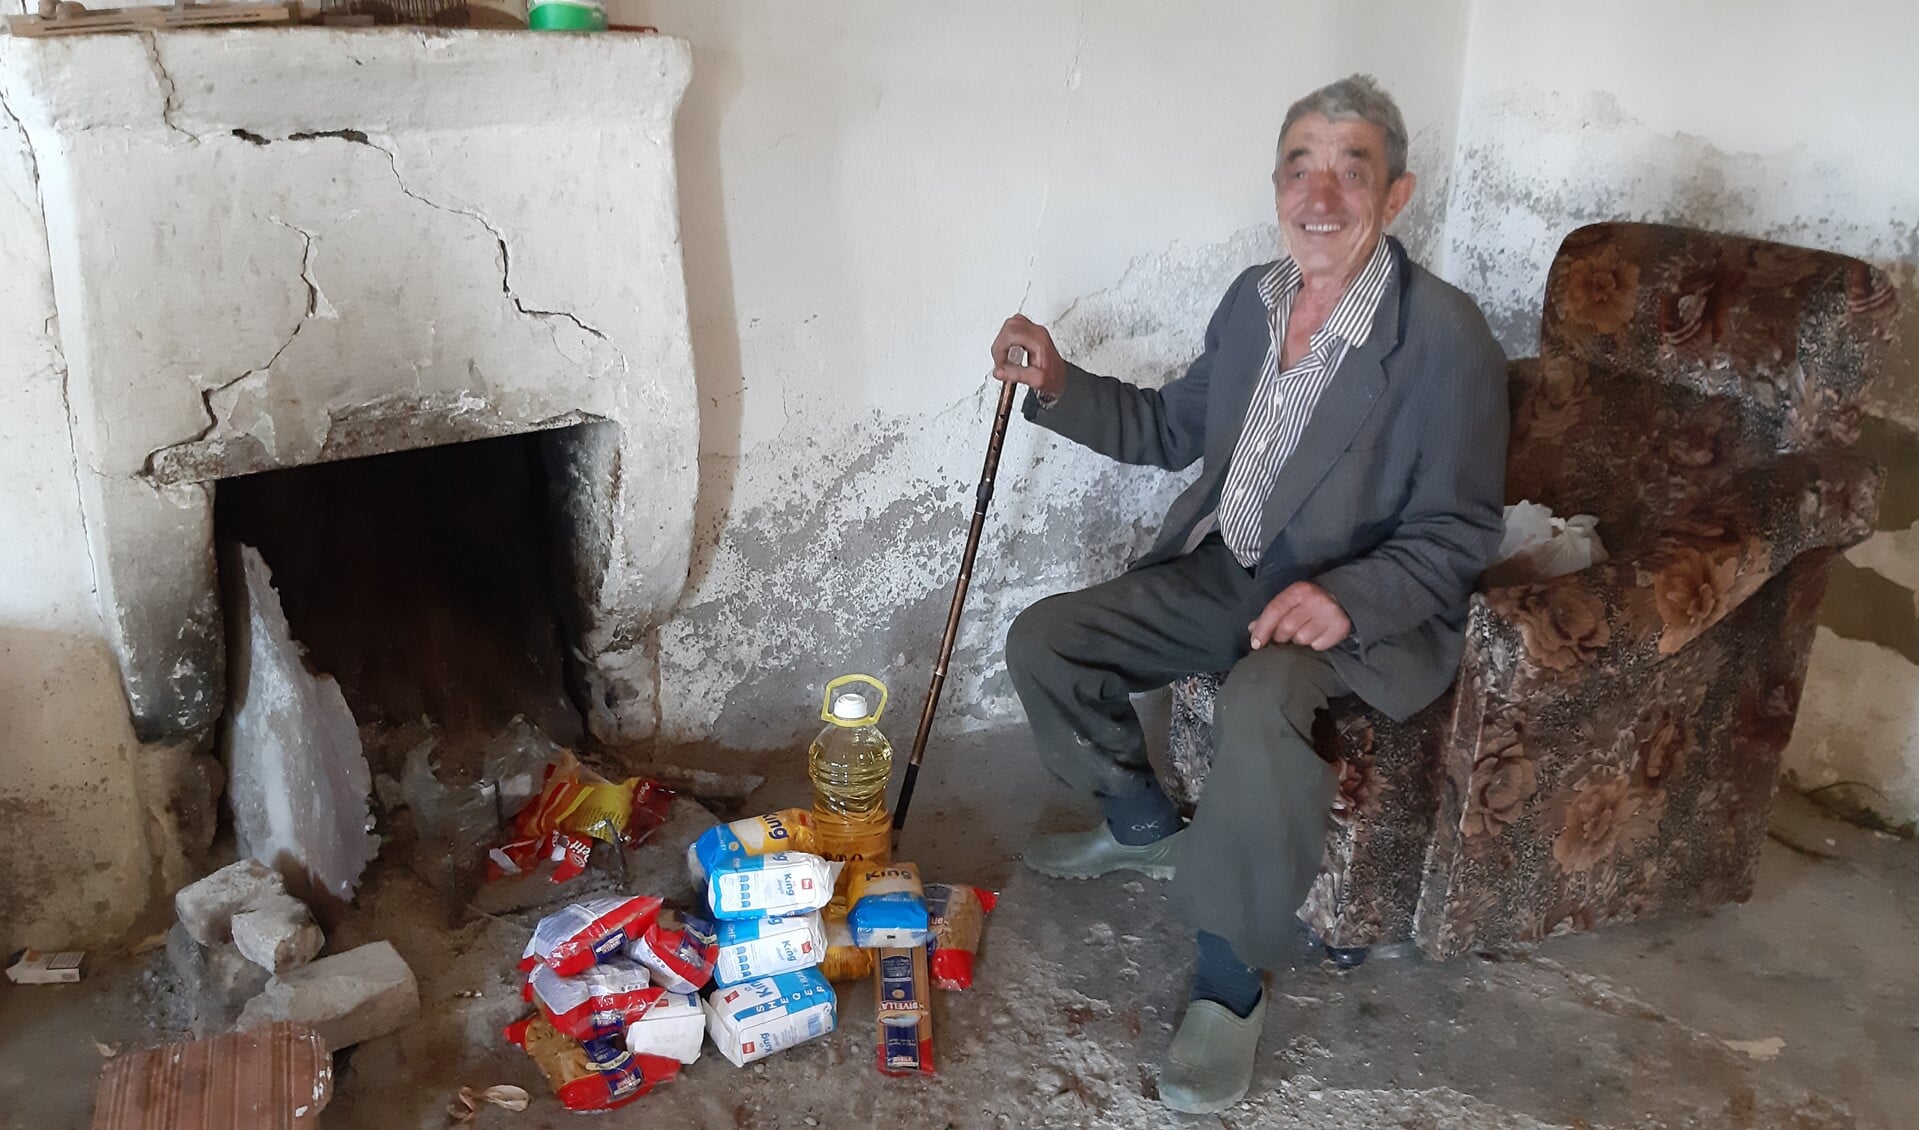 Deze allernoodzakelijkste levensbehoeften in het voedselpakke helpen deze dorpsbewoner en alle andere arme Albanese gezinnen de winter door.